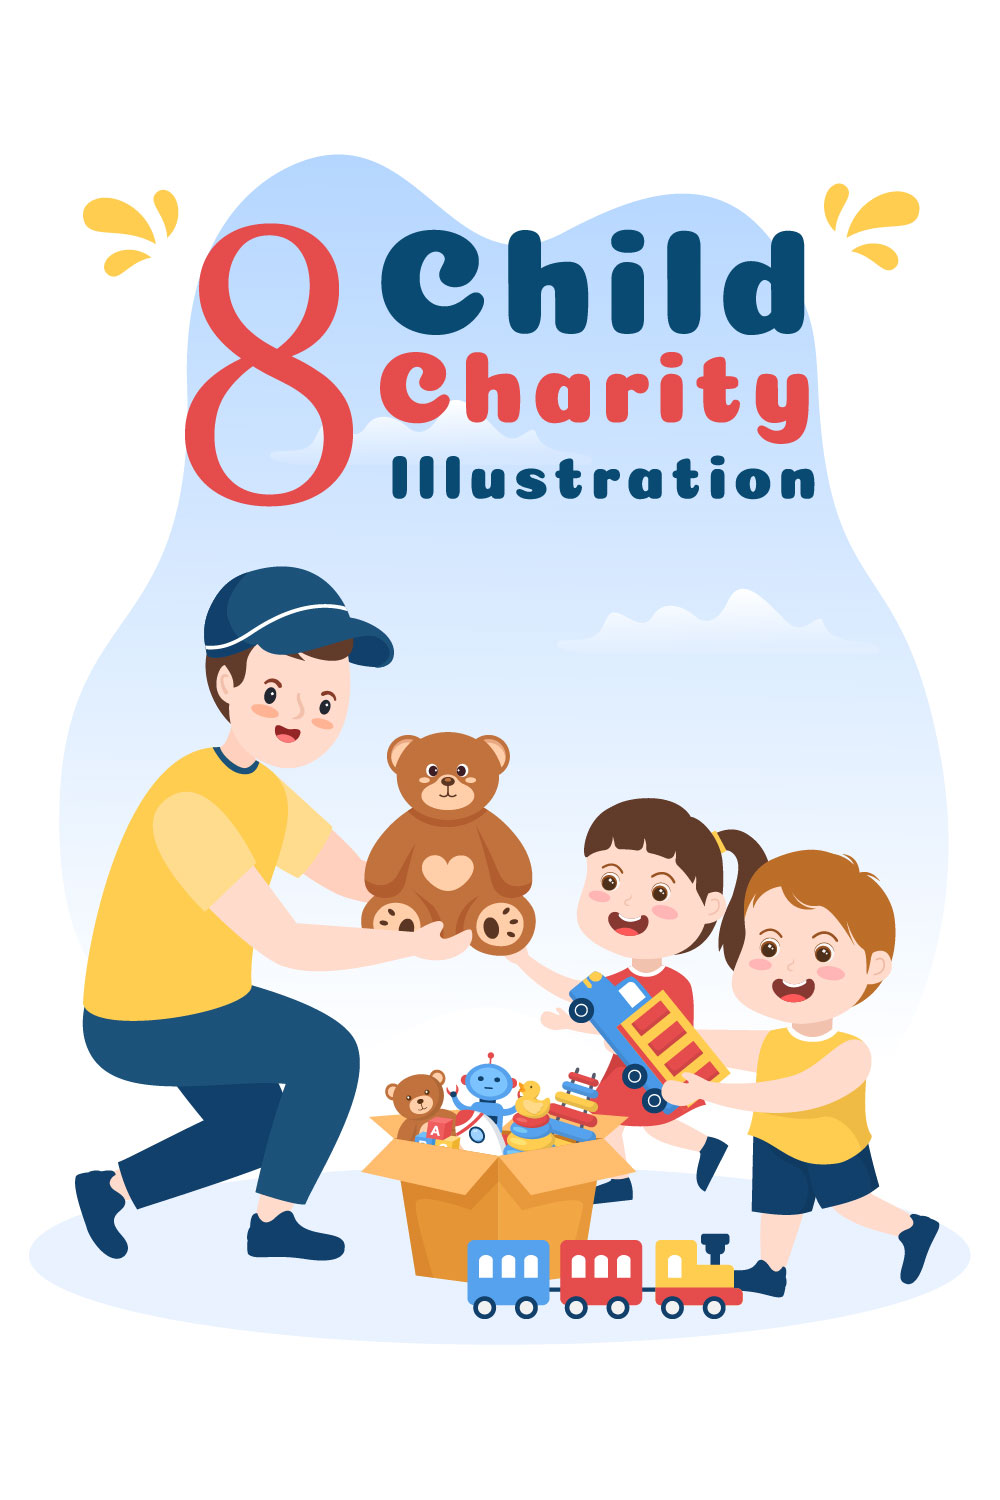 8 Donation Box Toys for Children Illustration pinterest image.